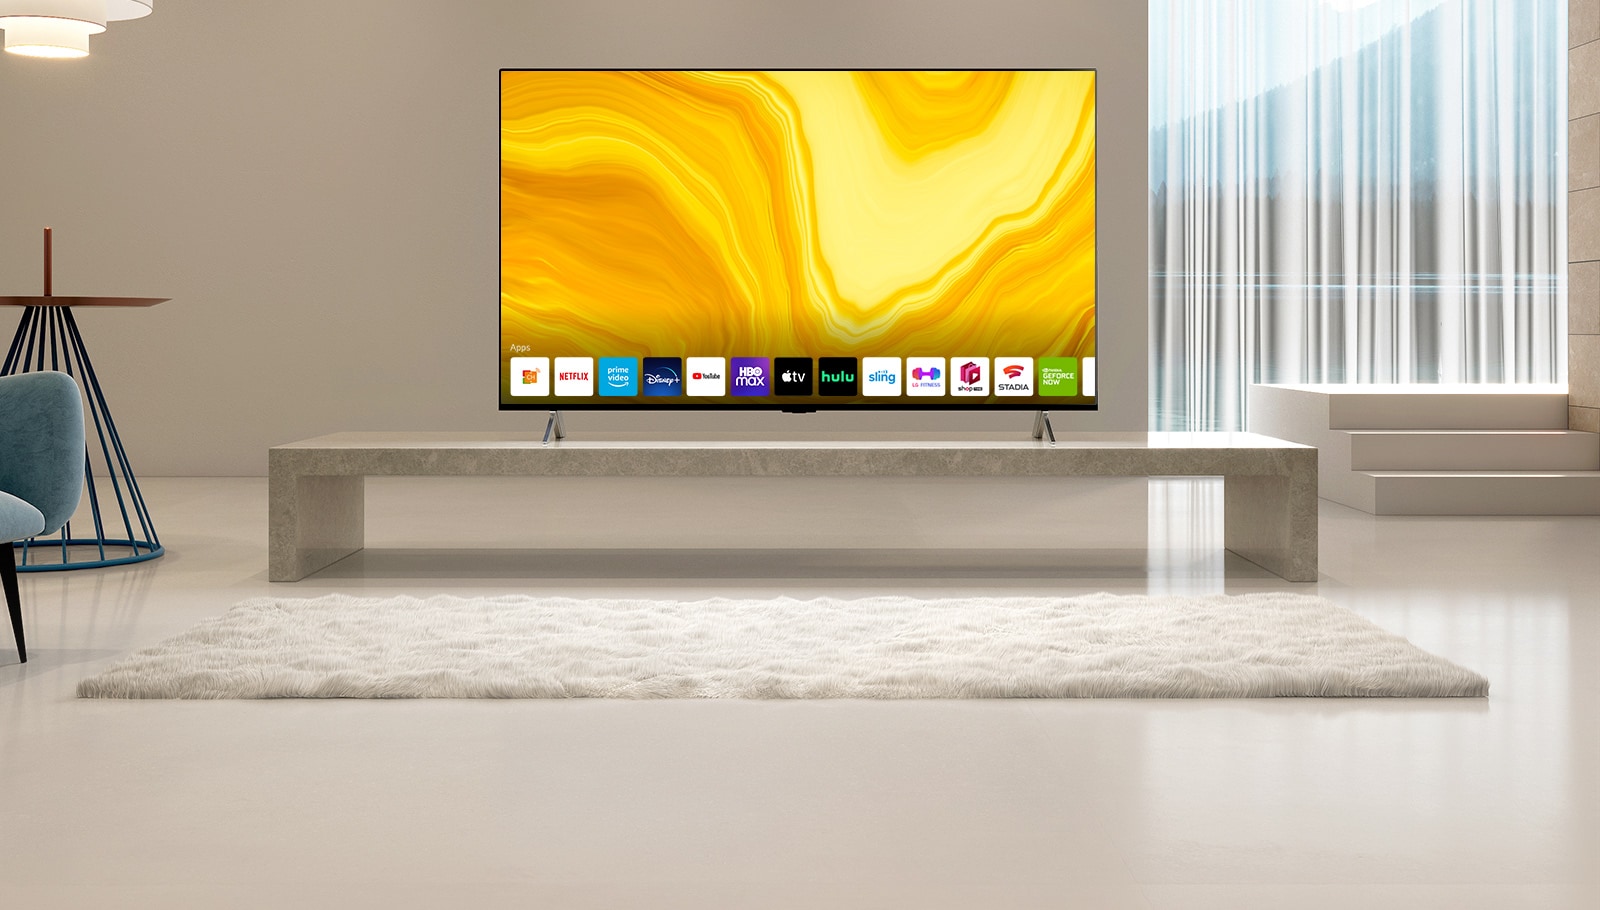 Prikaže se drsni seznam grafičnih uporabniških vmesnikov domačega zaslona televizorja LG QNED. Prizor se spremeni v televizijo, ki vas prikazuje v rumeni dnevni sobi.